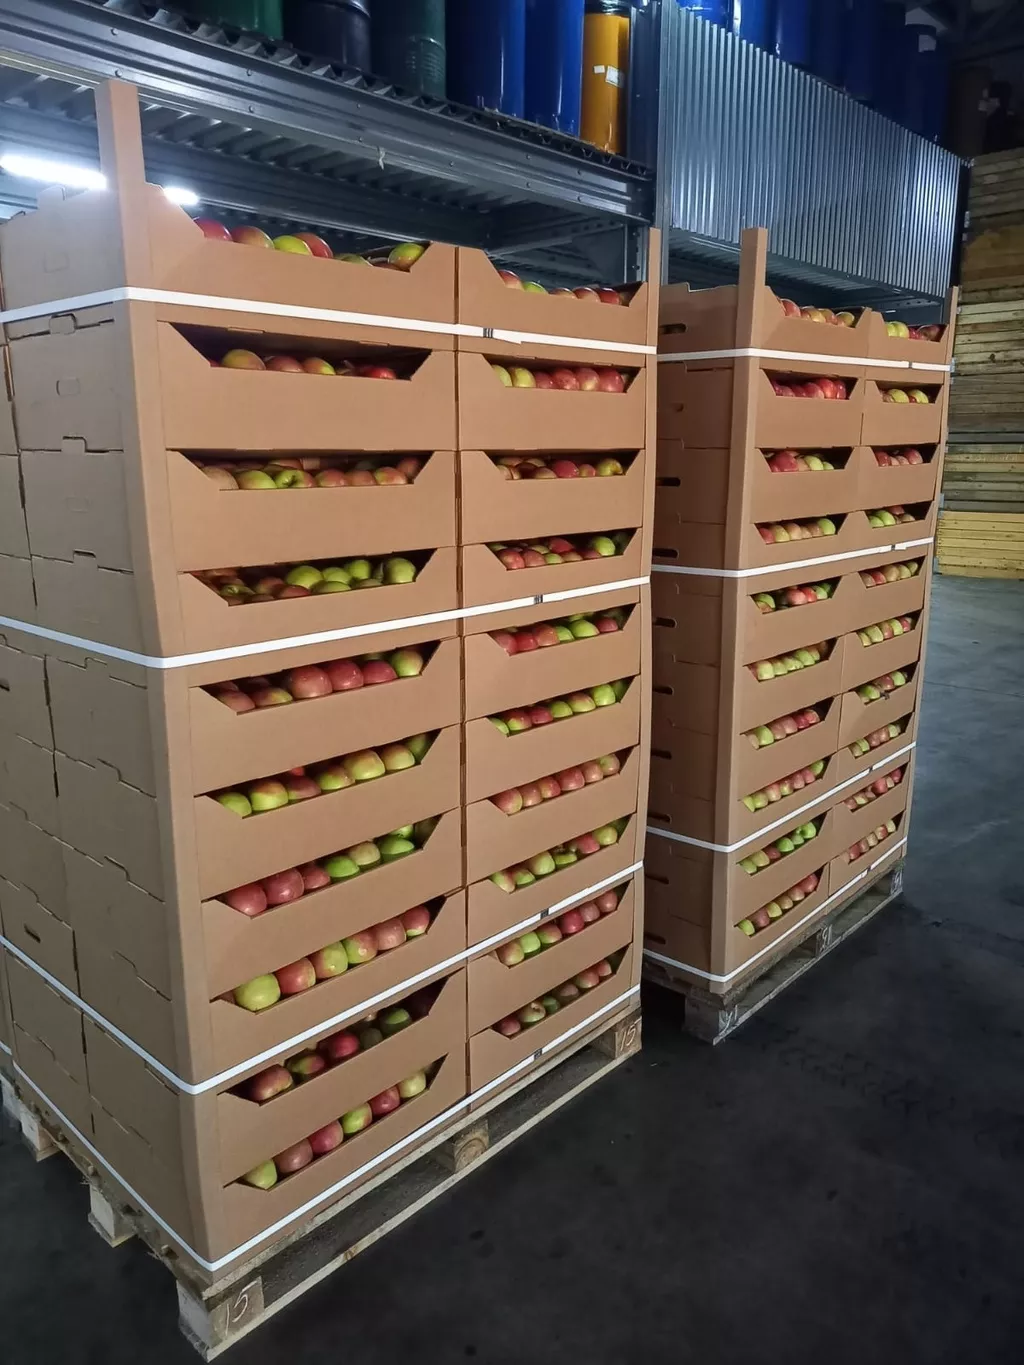 яблоки оптом напрямую от производителя  в Краснодаре и Краснодарском крае